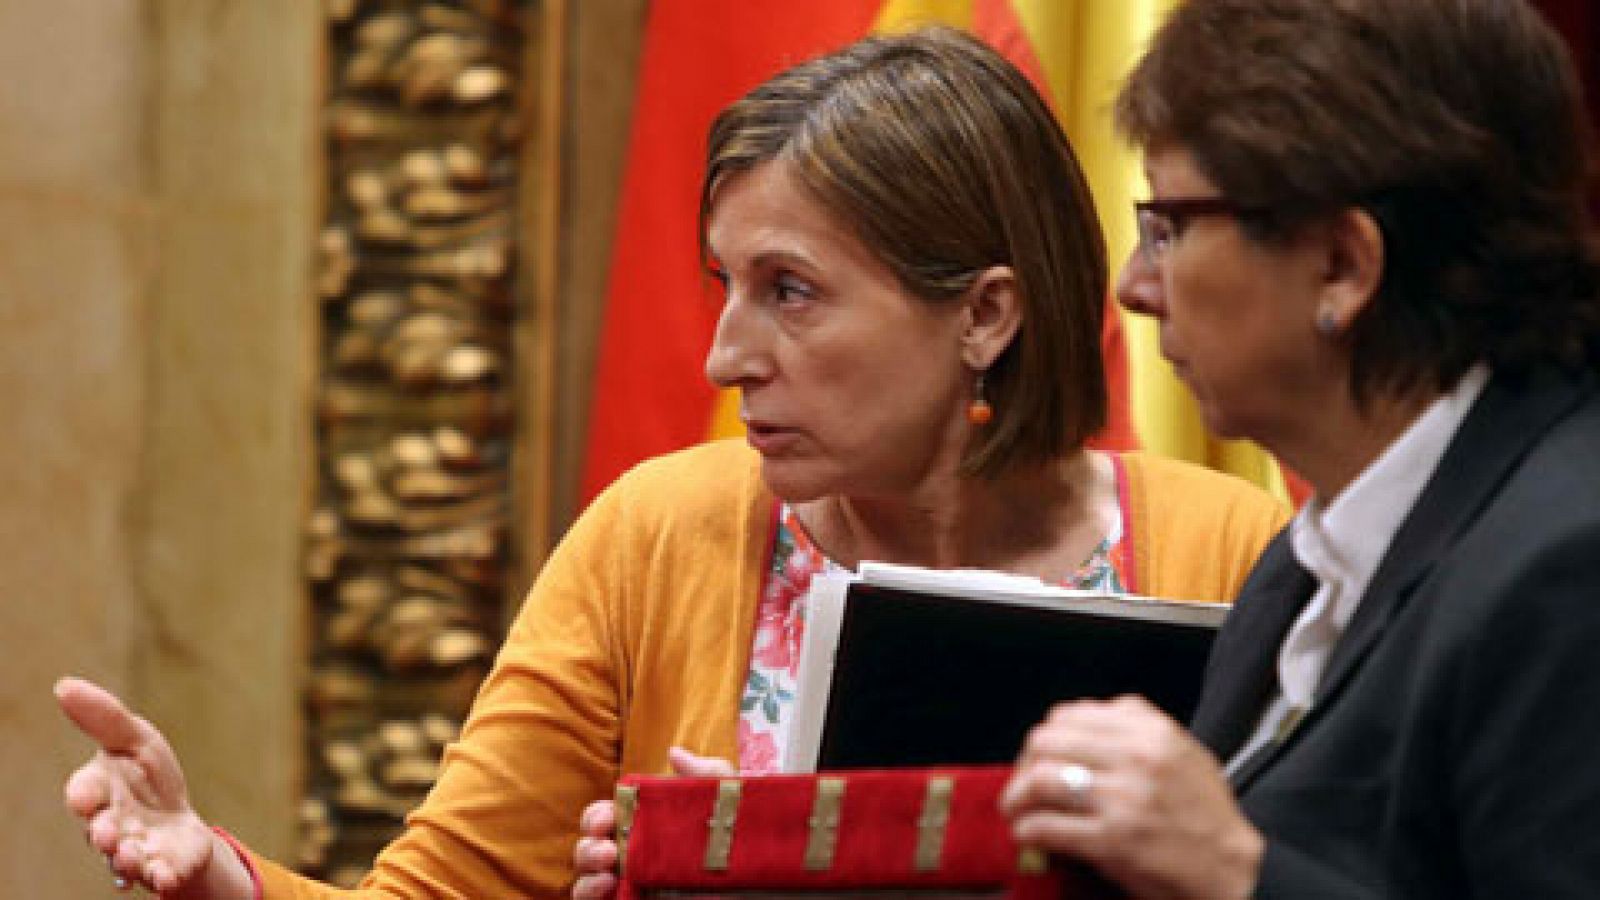  El Gobierno catalán ha vulnerado la Constitución y el reglamento del parlament 